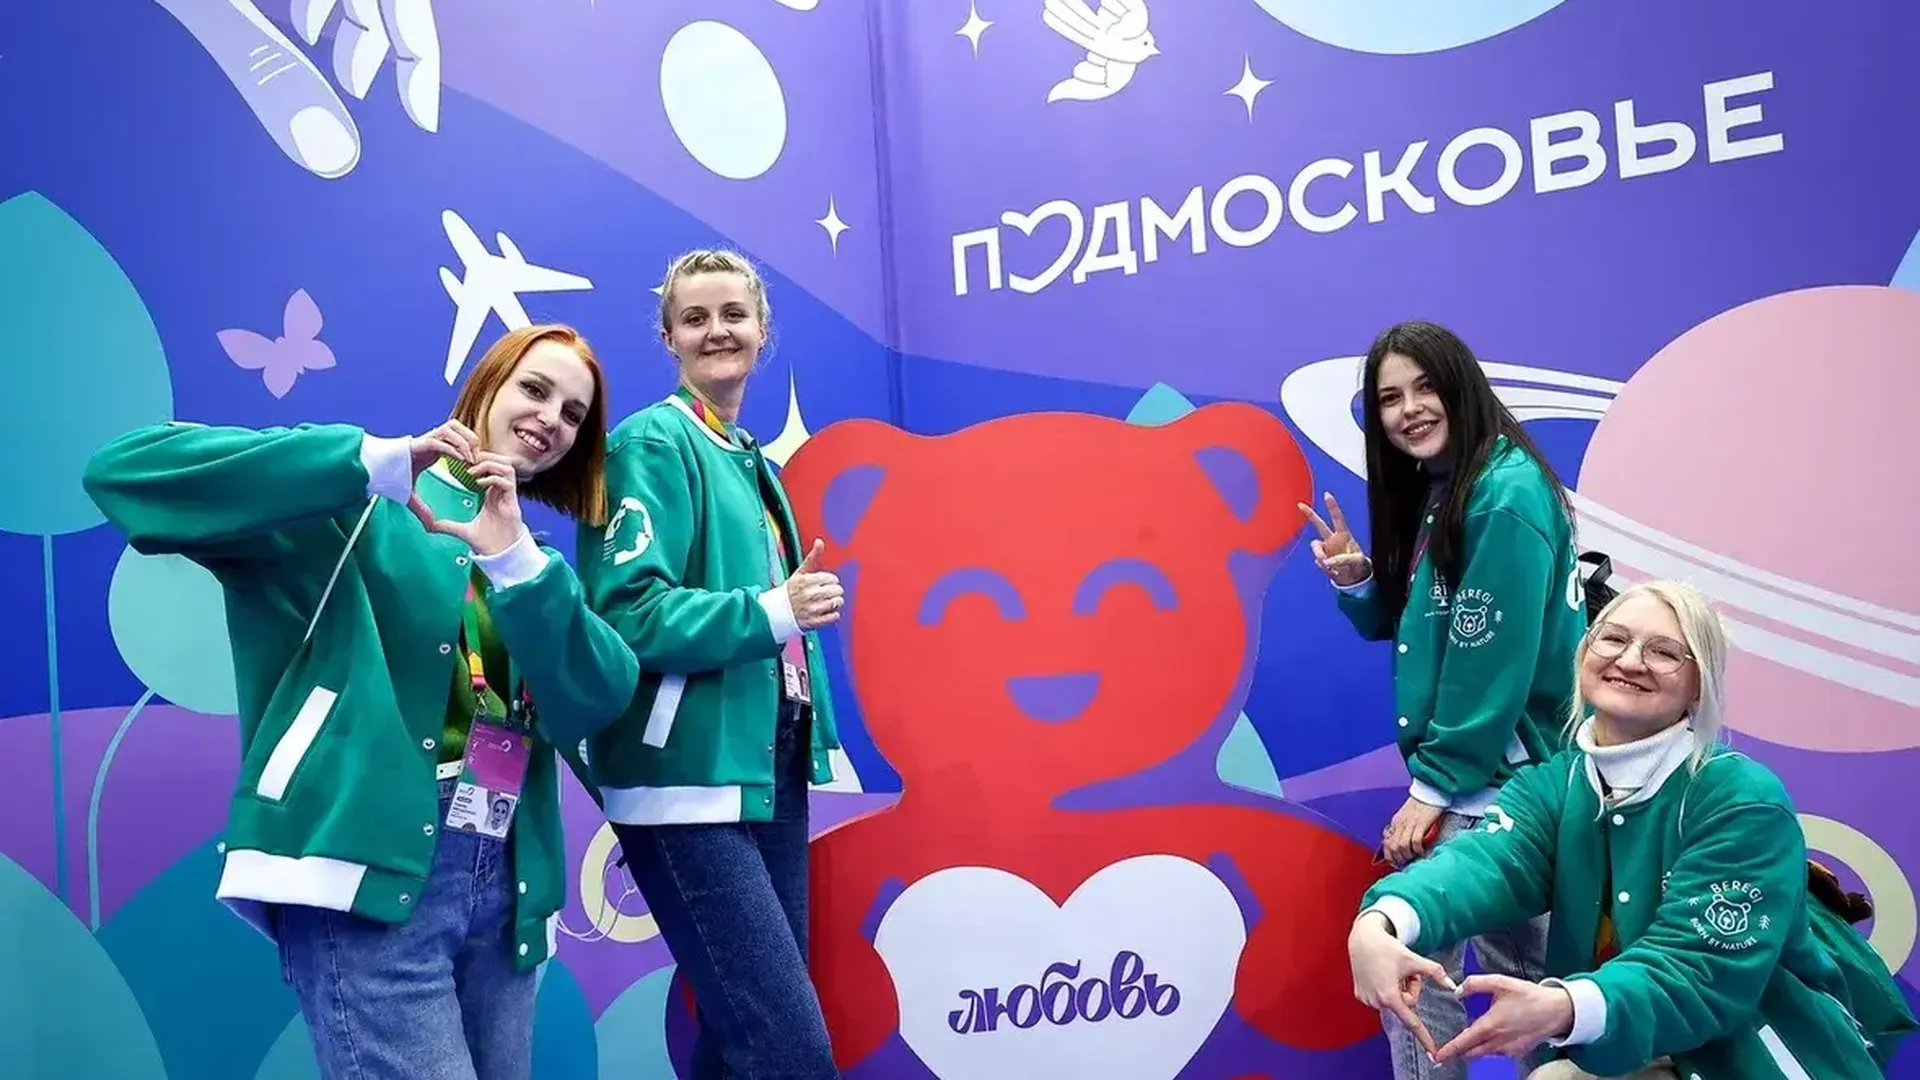 Подмосковная молодежь прибыла в Сочи для участия во Всемирном фестивале молодежи